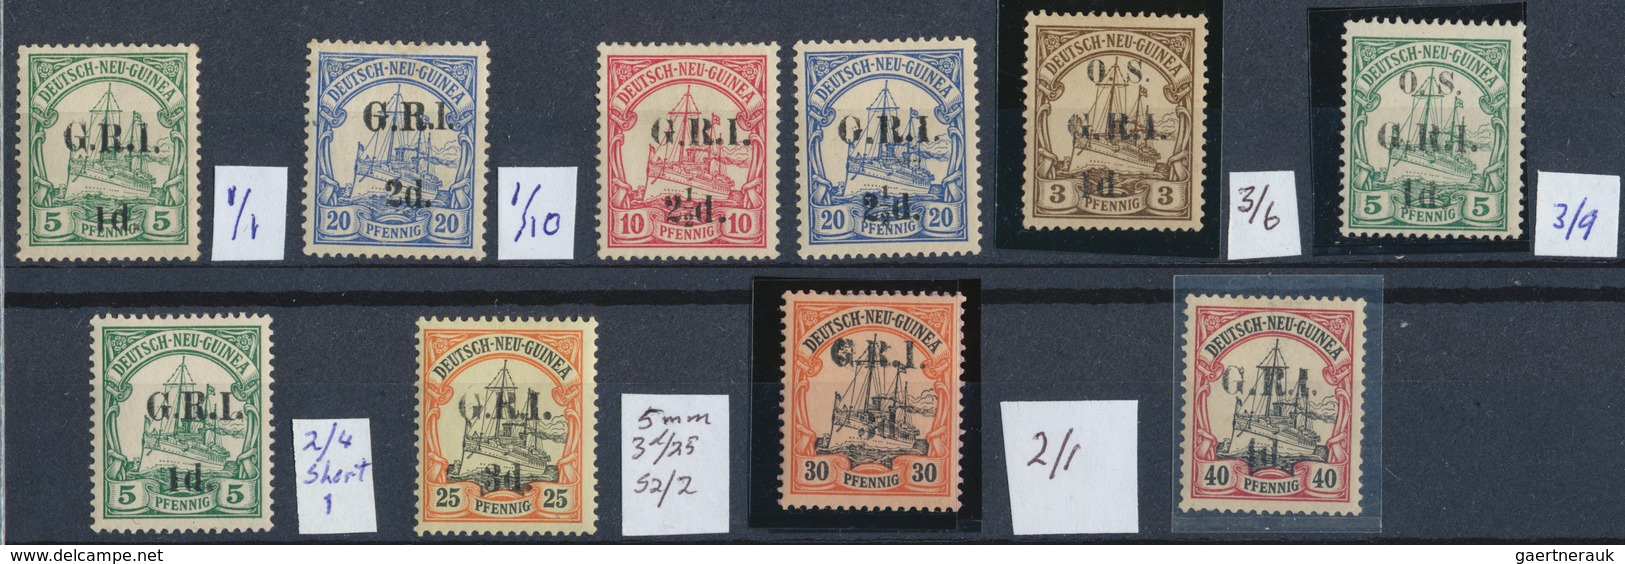 31854 Deutsch-Neuguinea - Britische Besetzung: 1914, Mint Lot Of Ten Stamps Incl. Varieties, Inventory Enc - Duits-Nieuw-Guinea